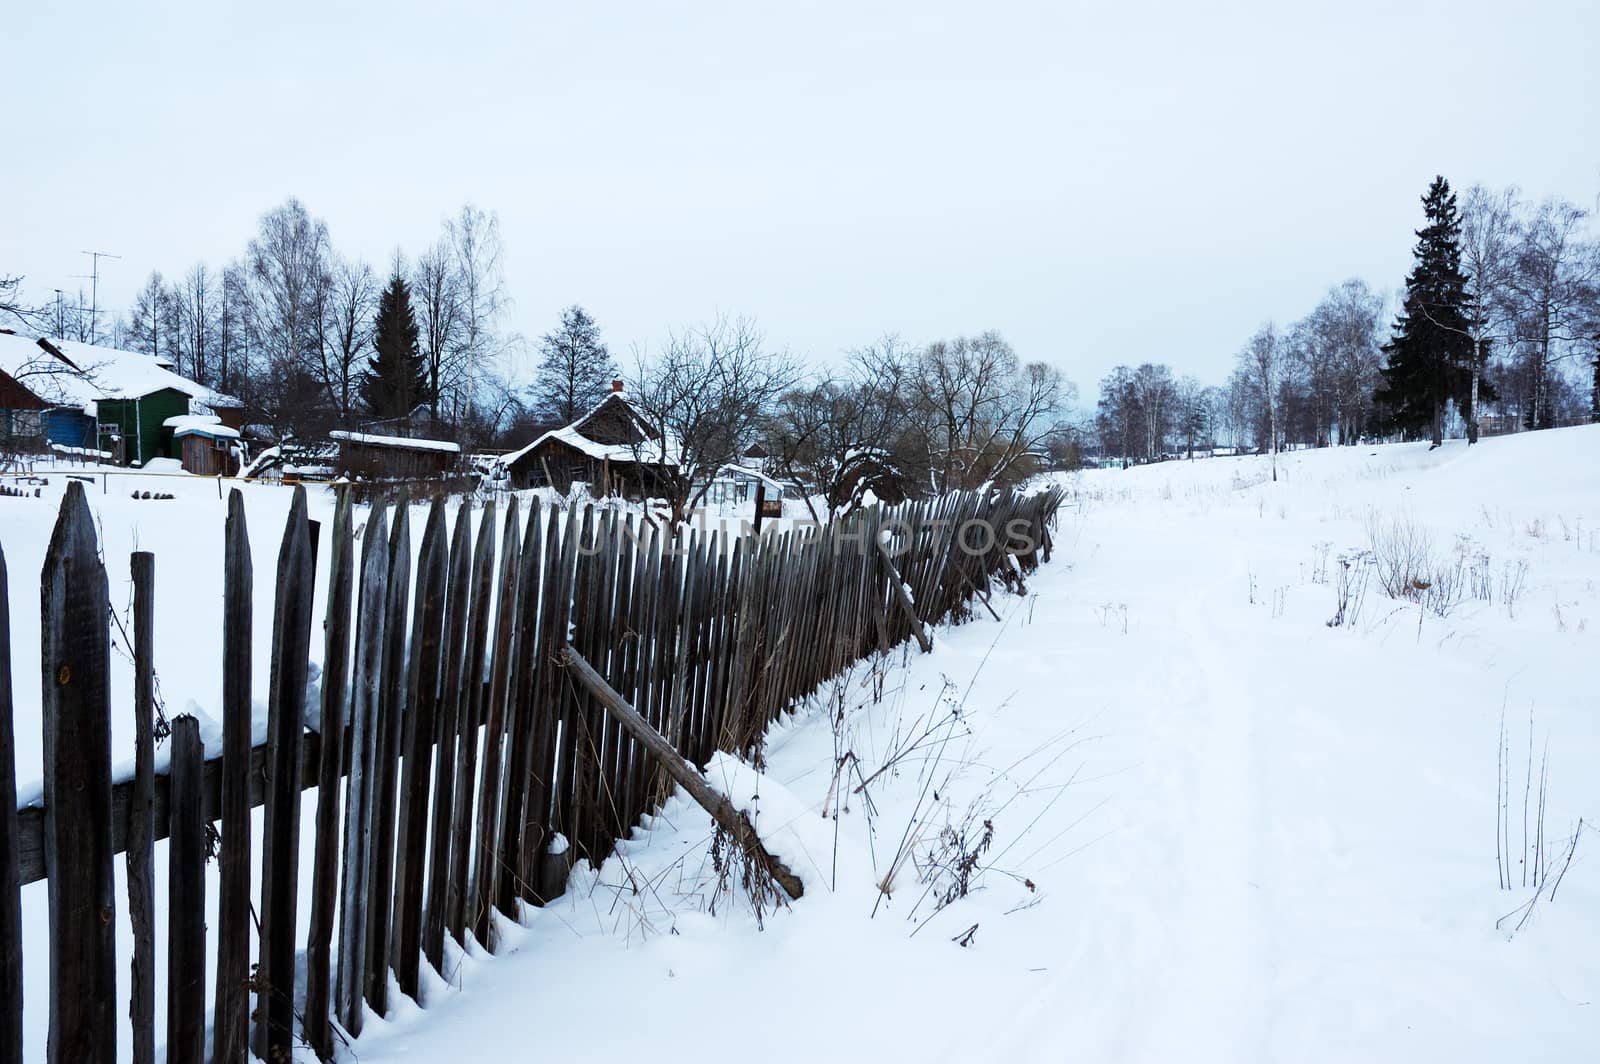 Snowy footpath near wooden fence by wander